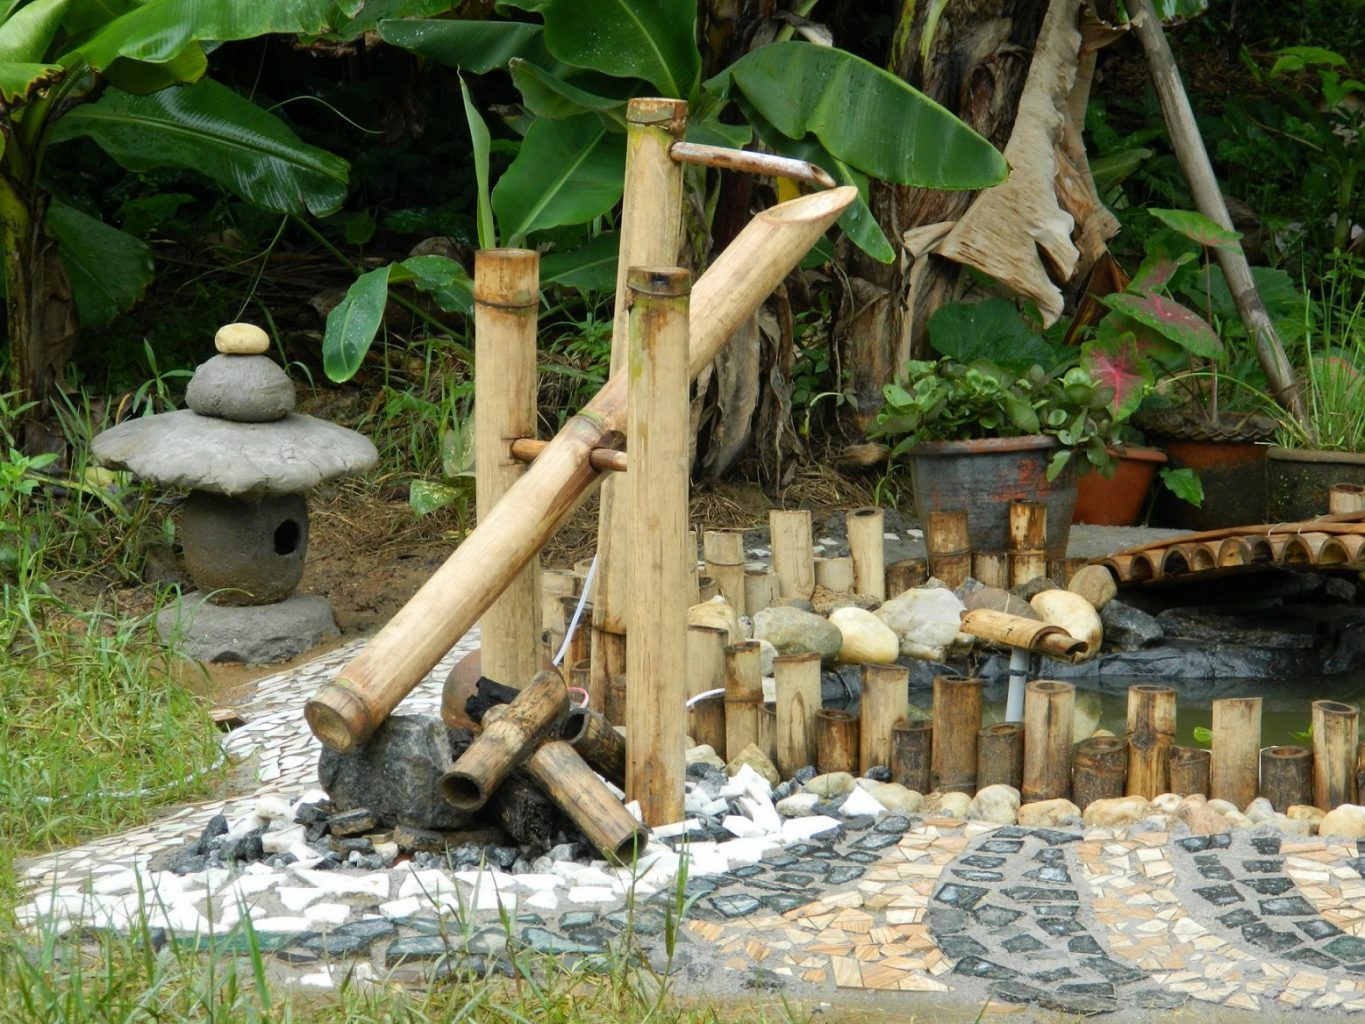 Membuat Air Mancur Tradisional Jepang Yang Disebut... - Artforia | Seni